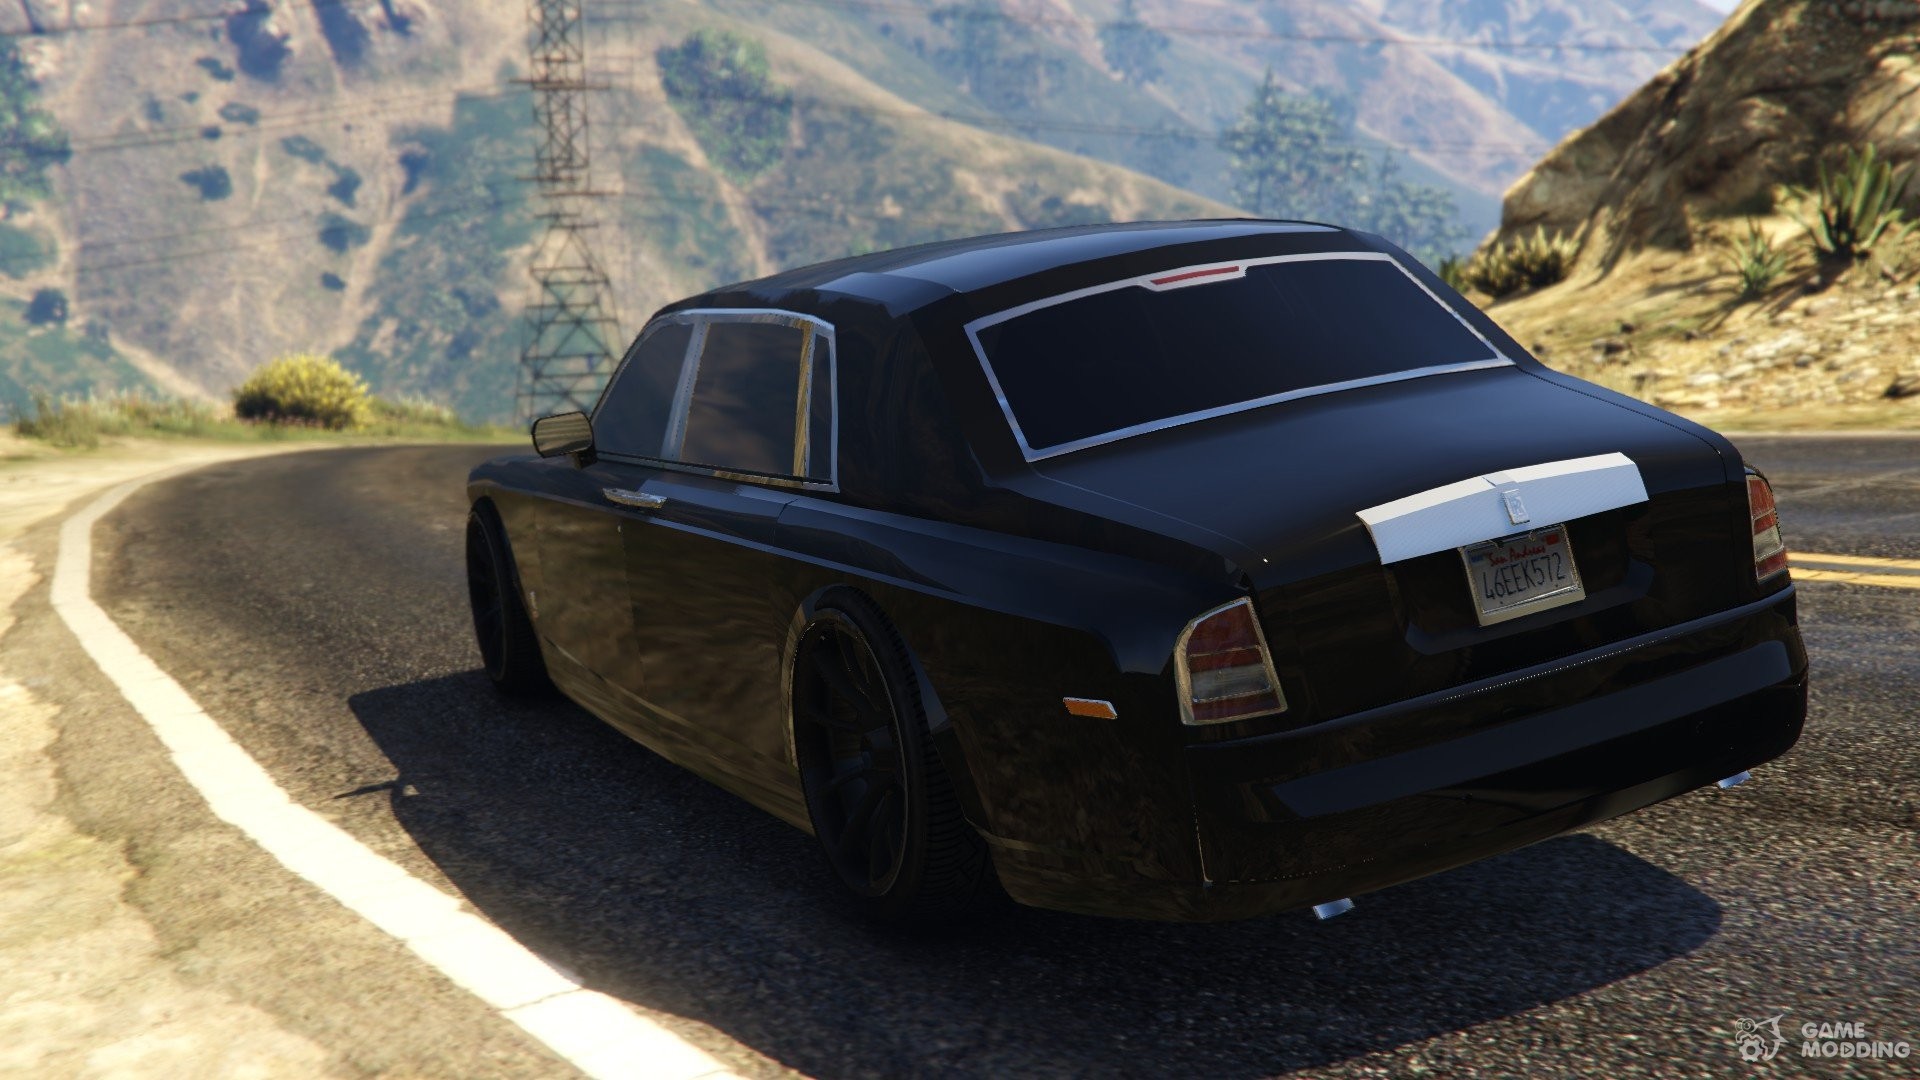 Rolls Royce Phantom For Gta 5